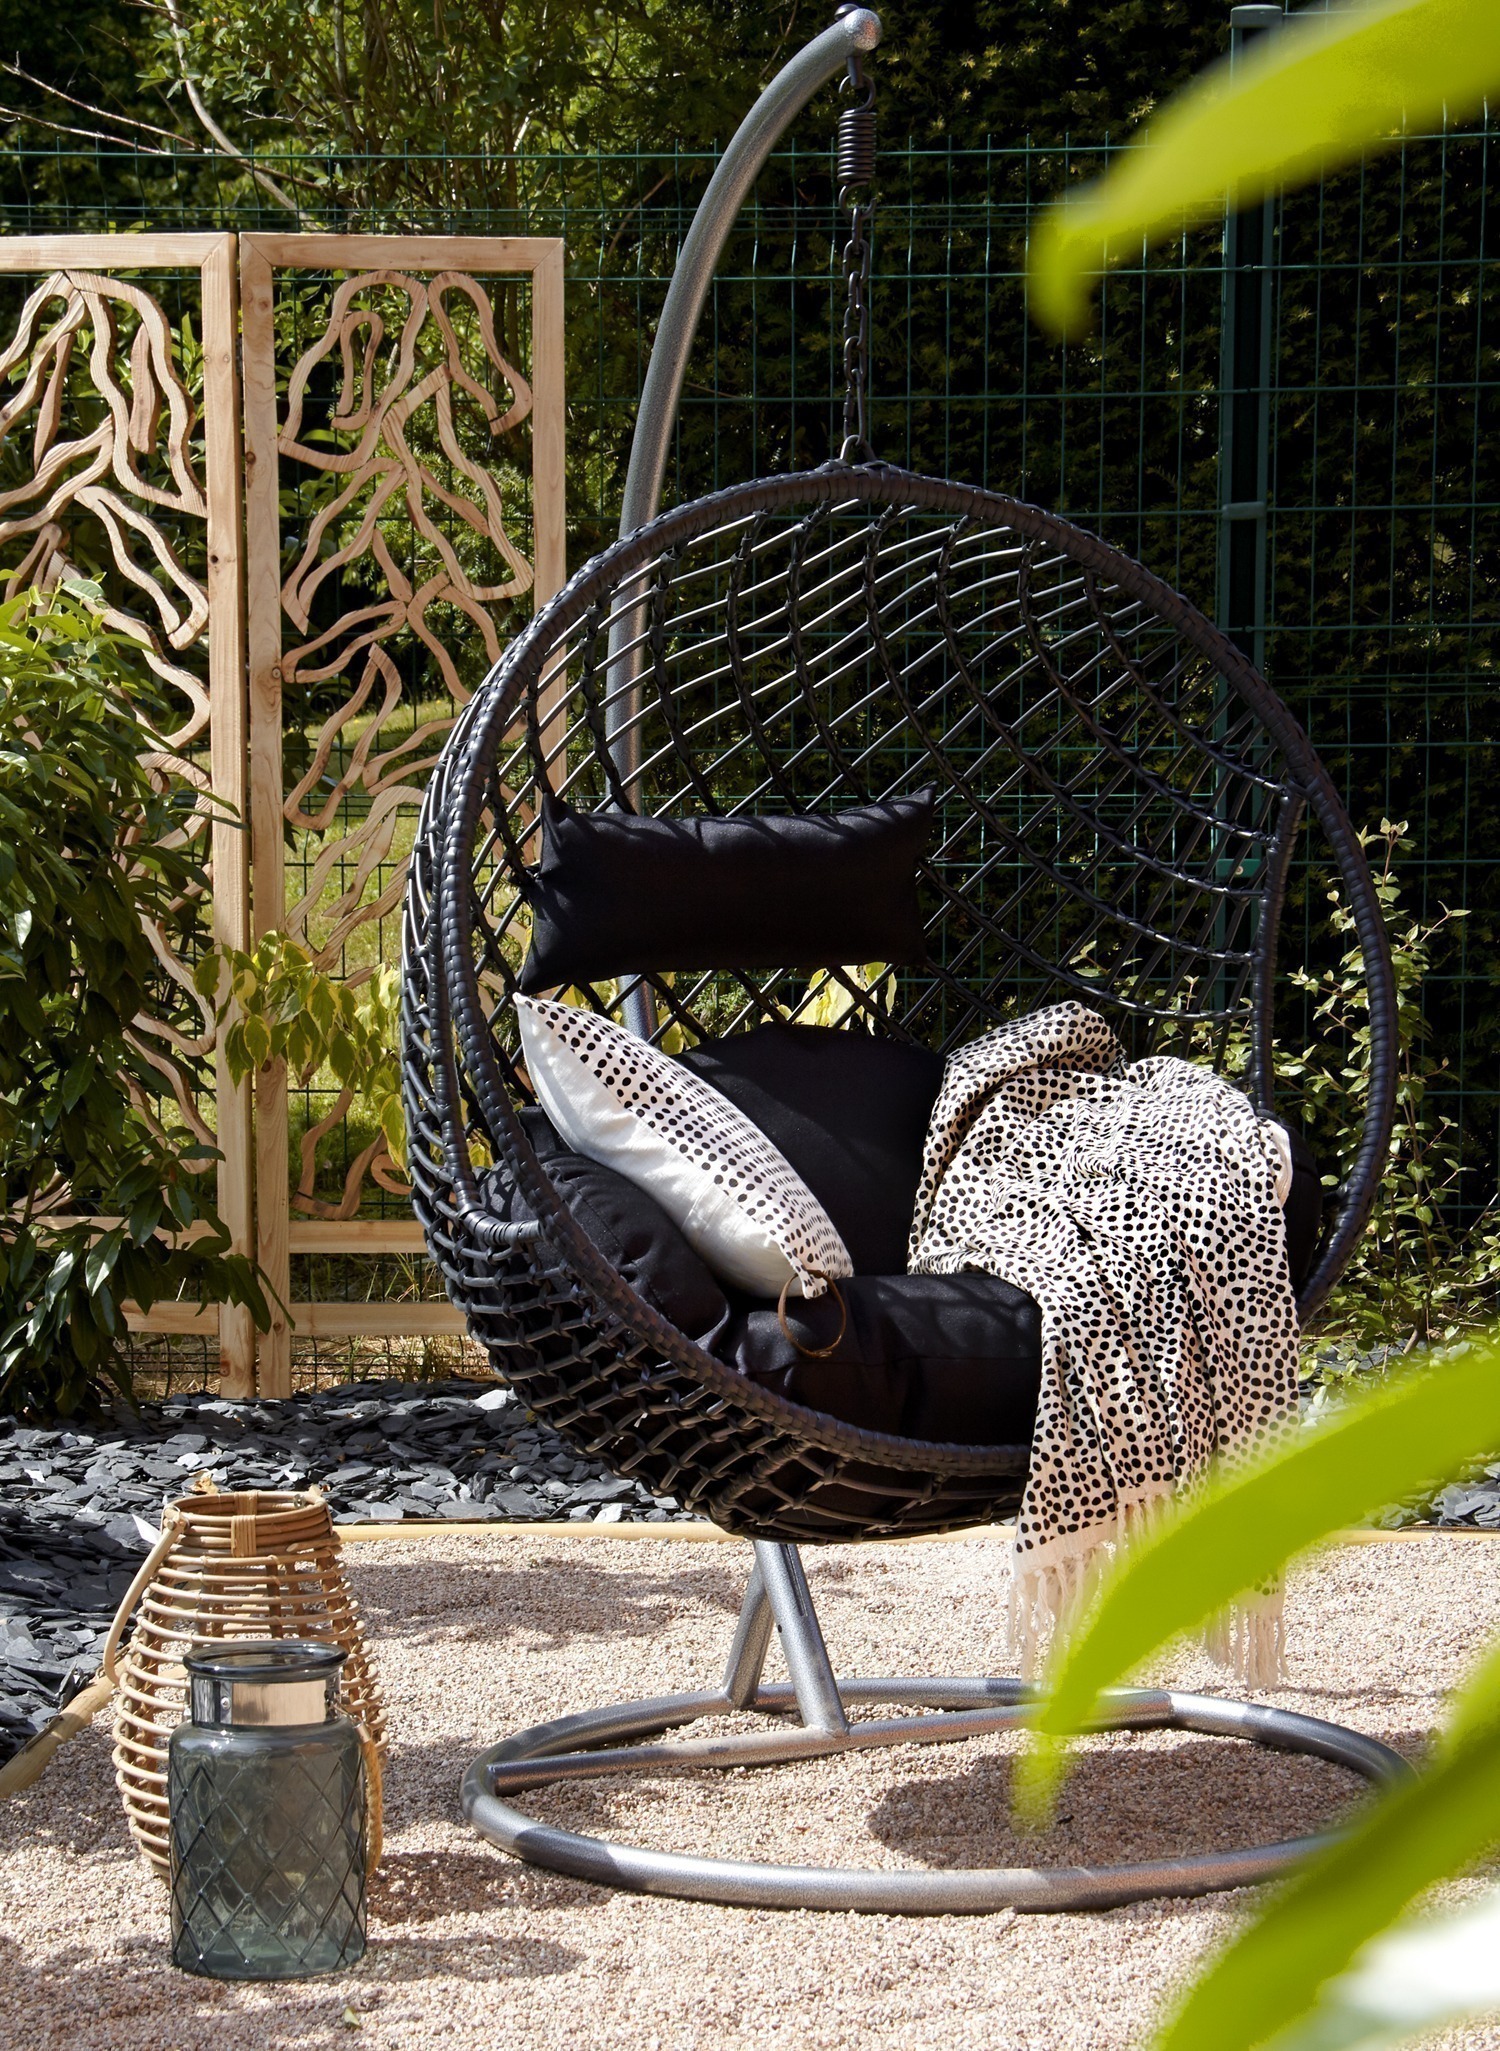 Fauteuil de jardin en métal, fauteuil extérieur confortable